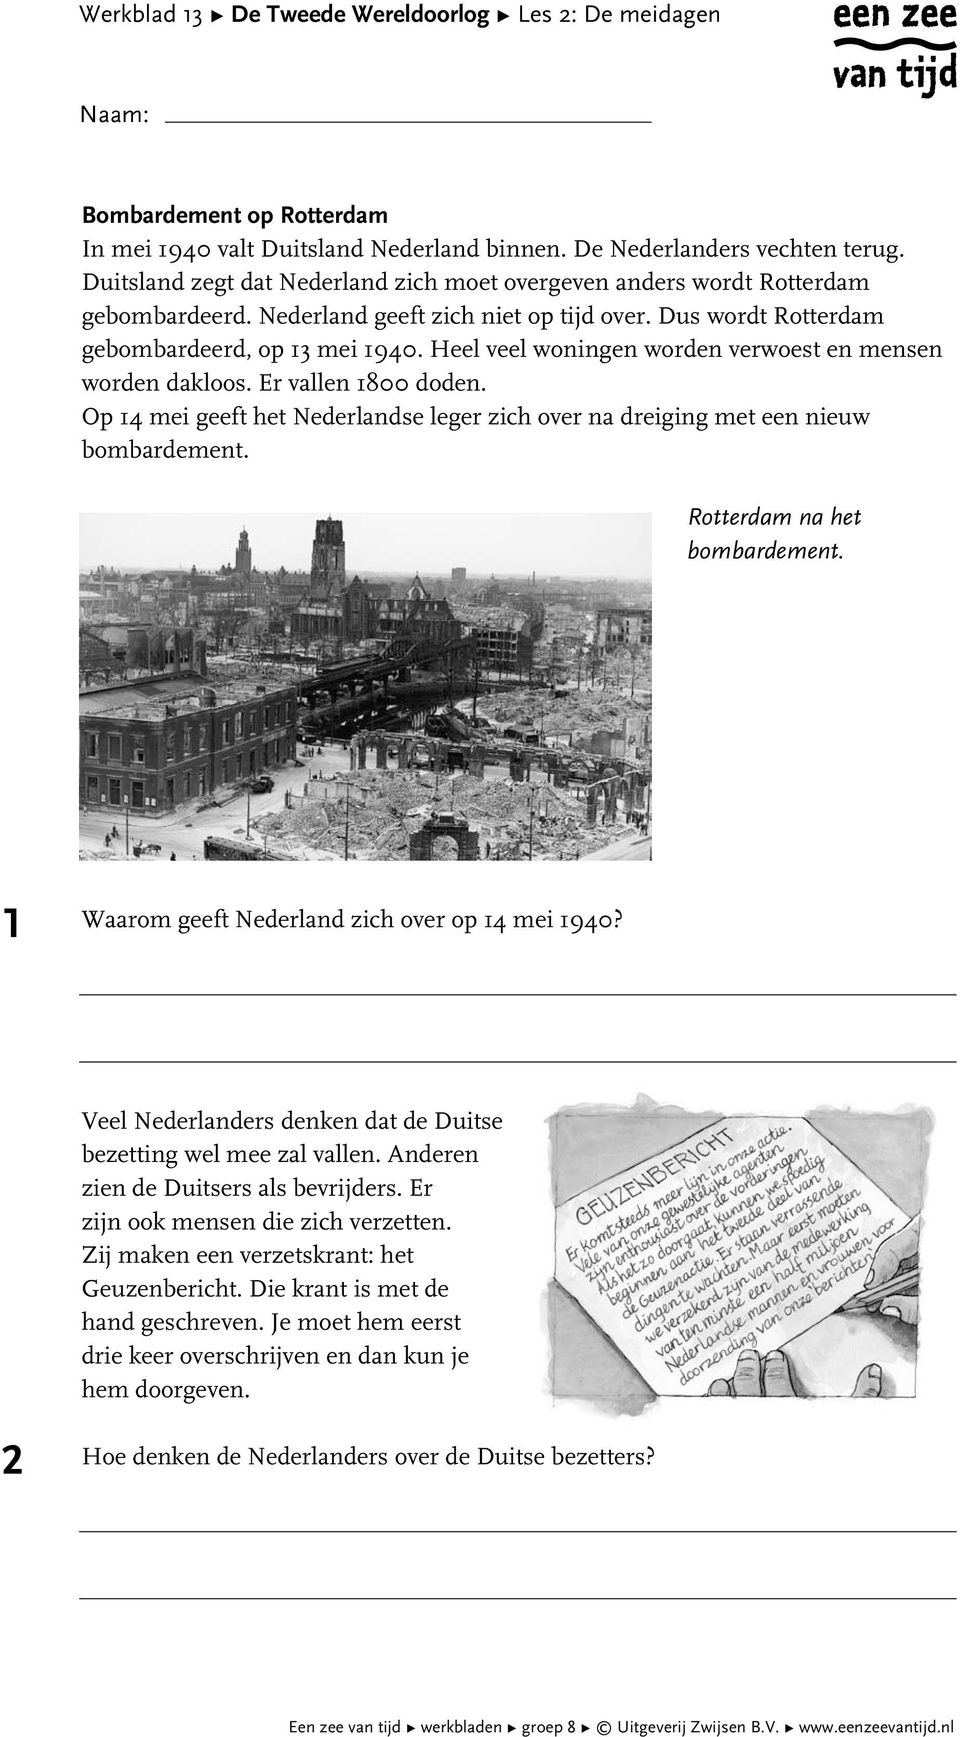 Dus wordt Rotterdam gebombardeerd, op 3 mei 940. Heel veel woningen worden verwoest en mensen worden dakloos. Er vallen 800 doden.